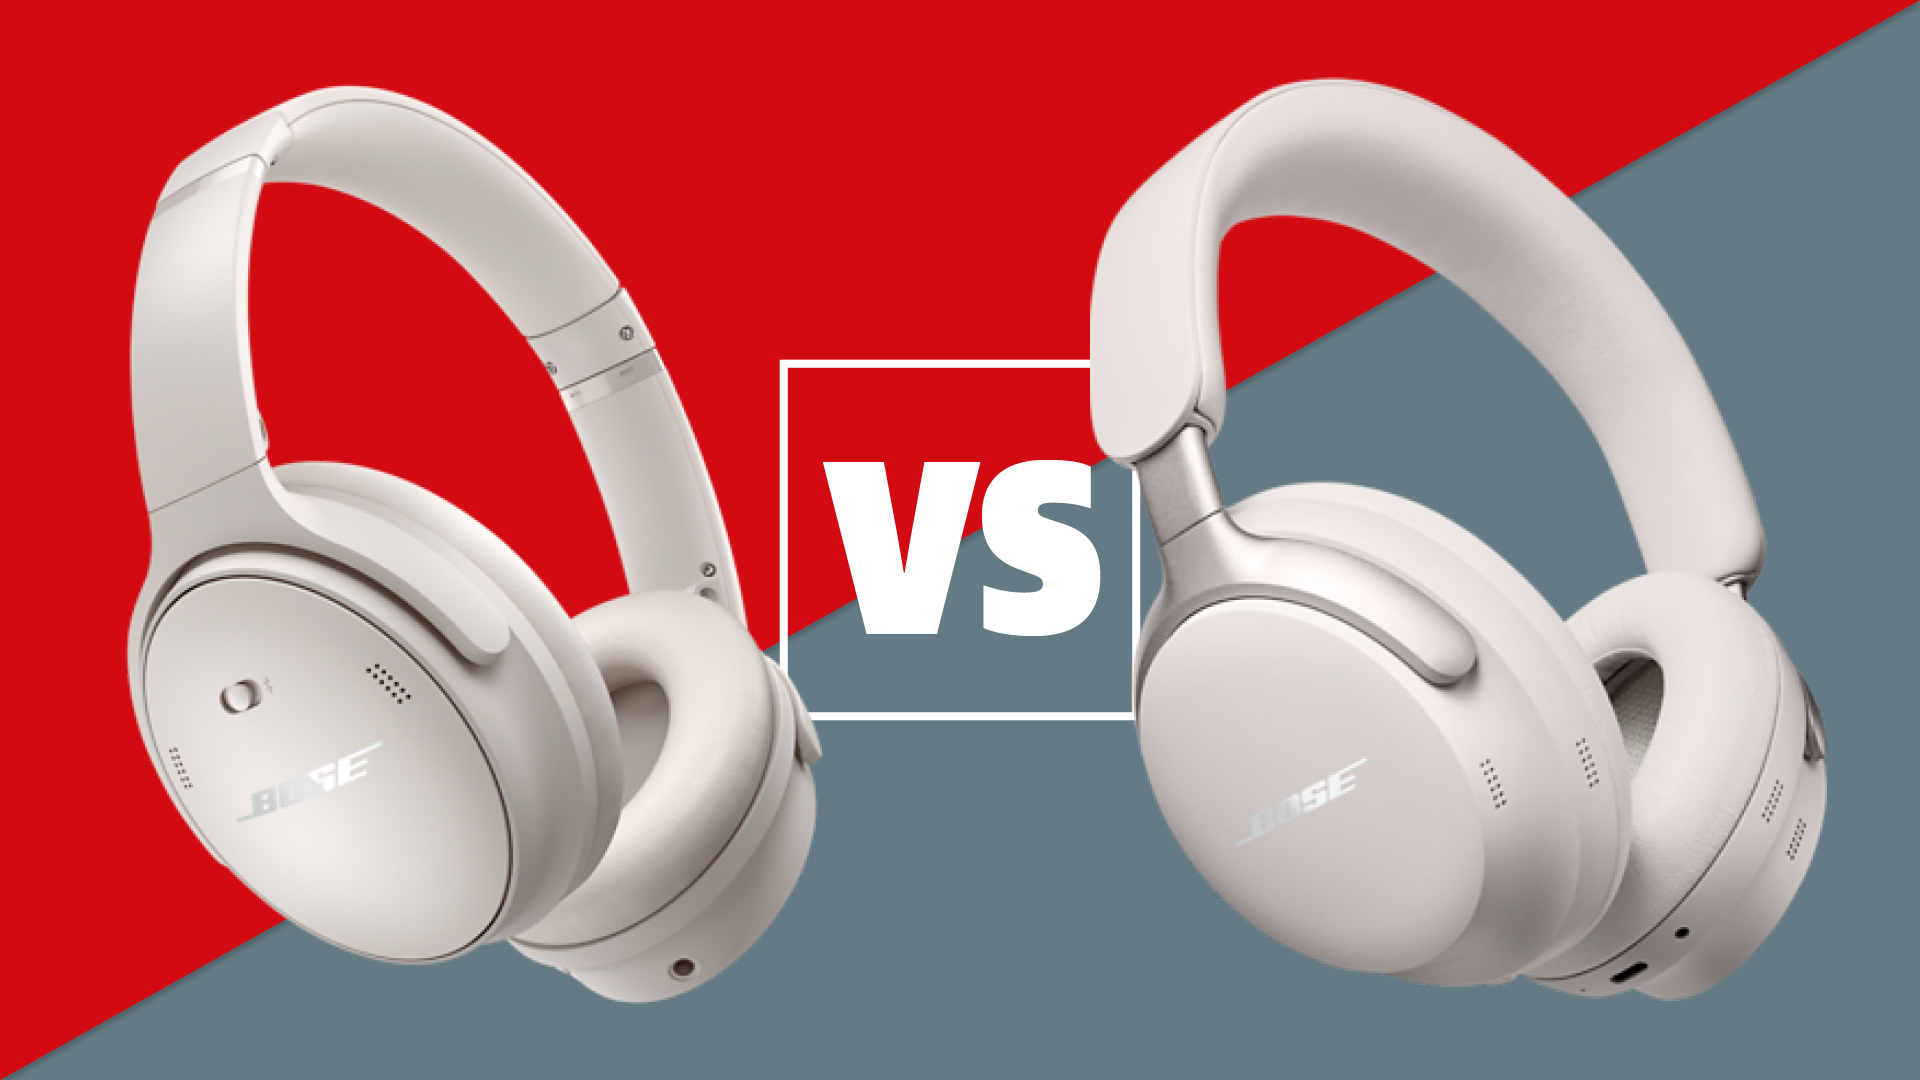 Bose QuietComfort Headphones vs QuietComfort Ultra Headphones